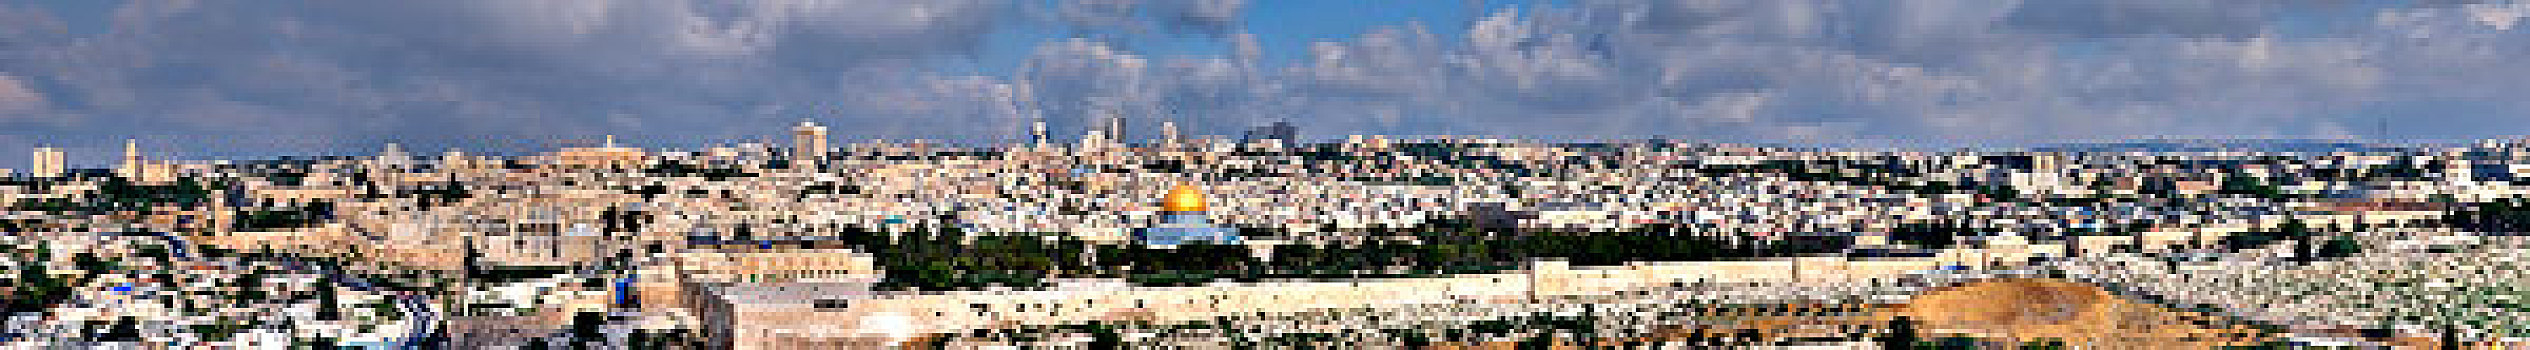 全景,城市,耶路撒冷,以色列